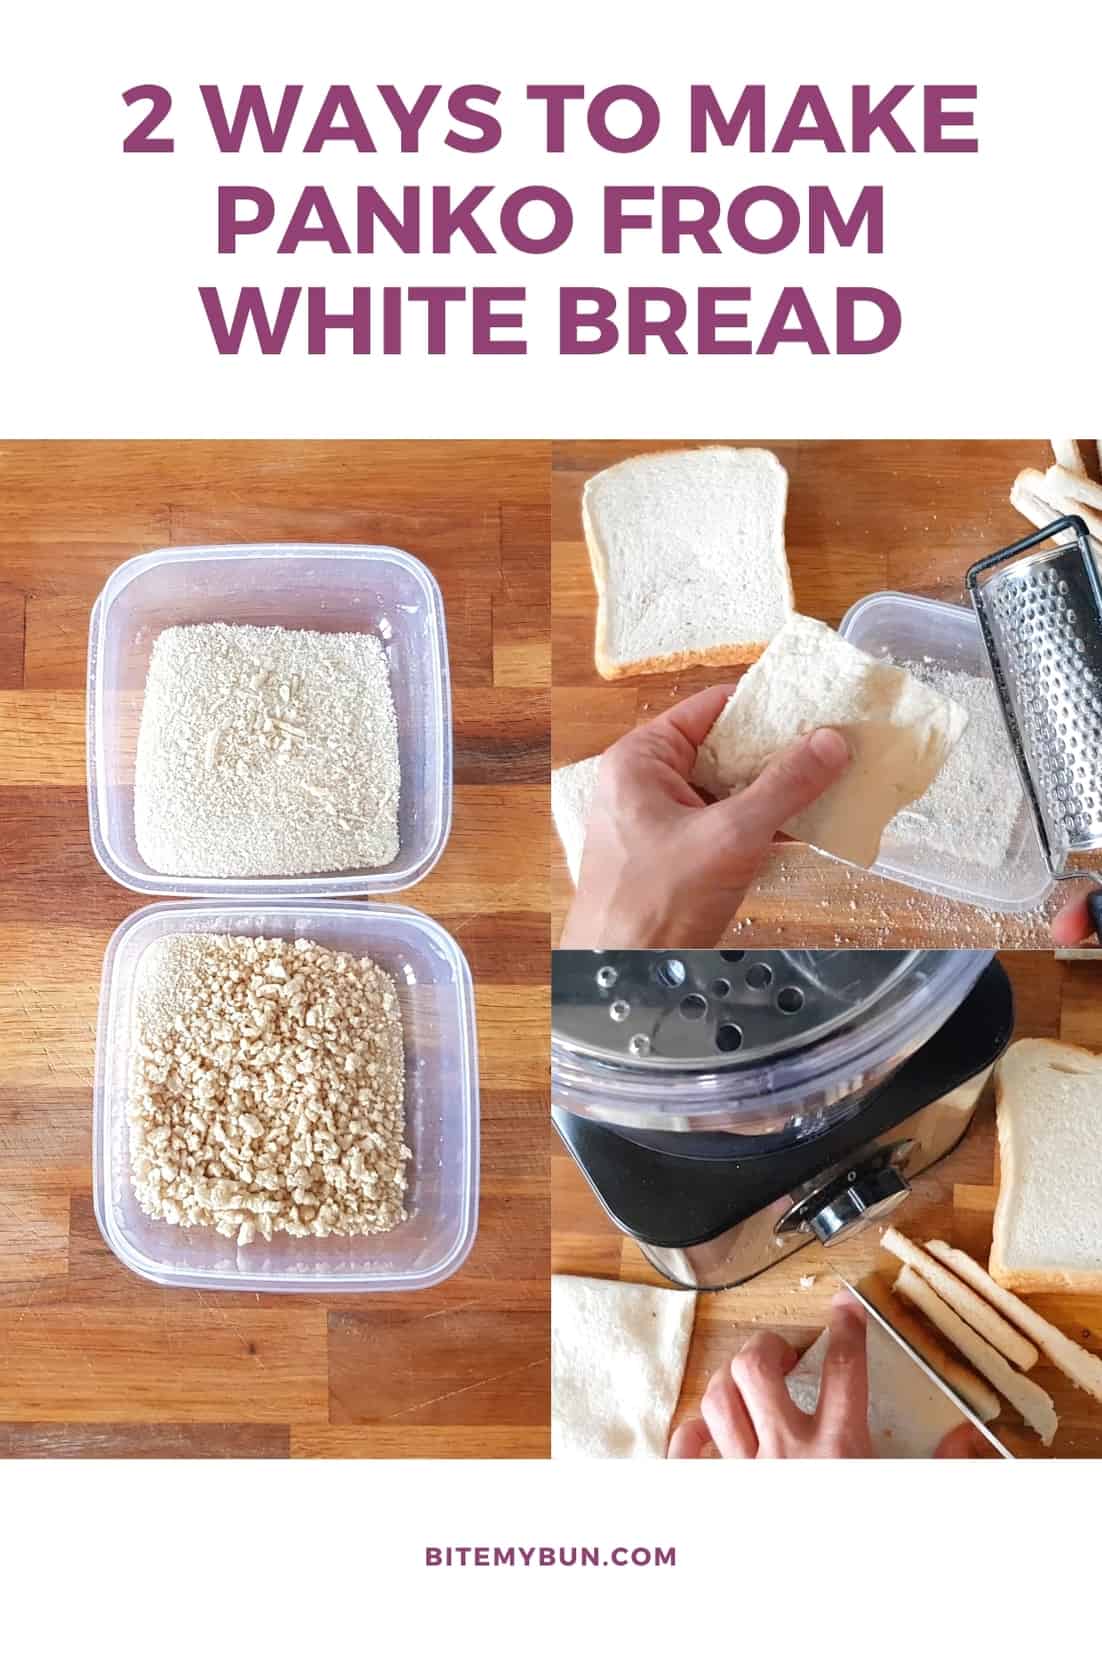 2 ways to make panko from white bread